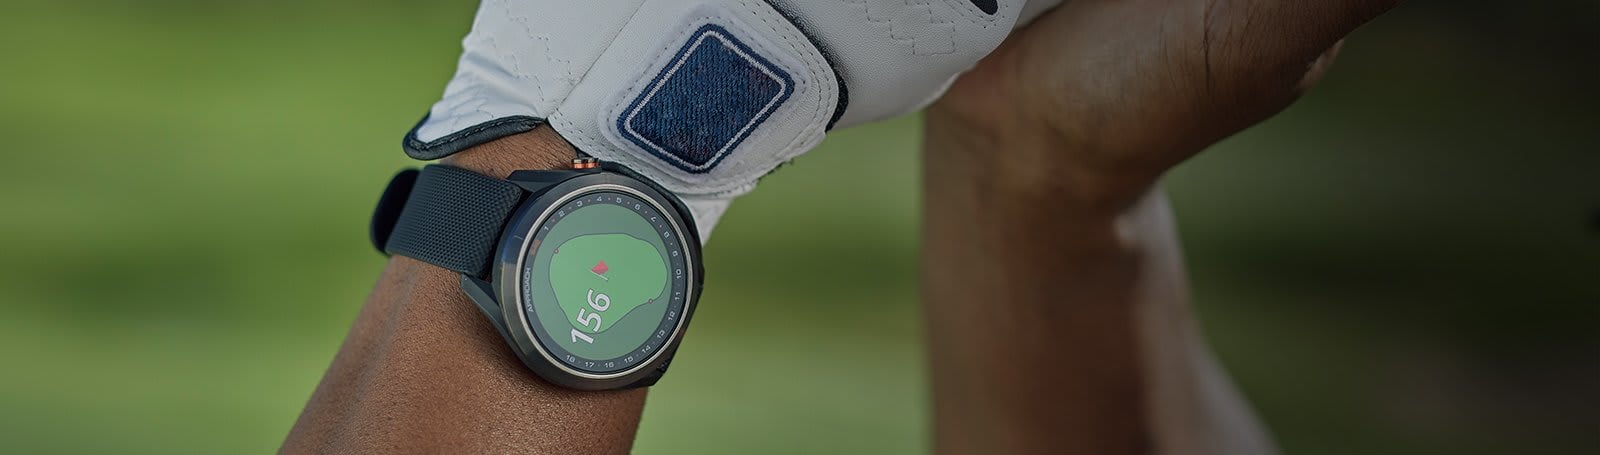 Garmin Approach® S42 | Golf Watch